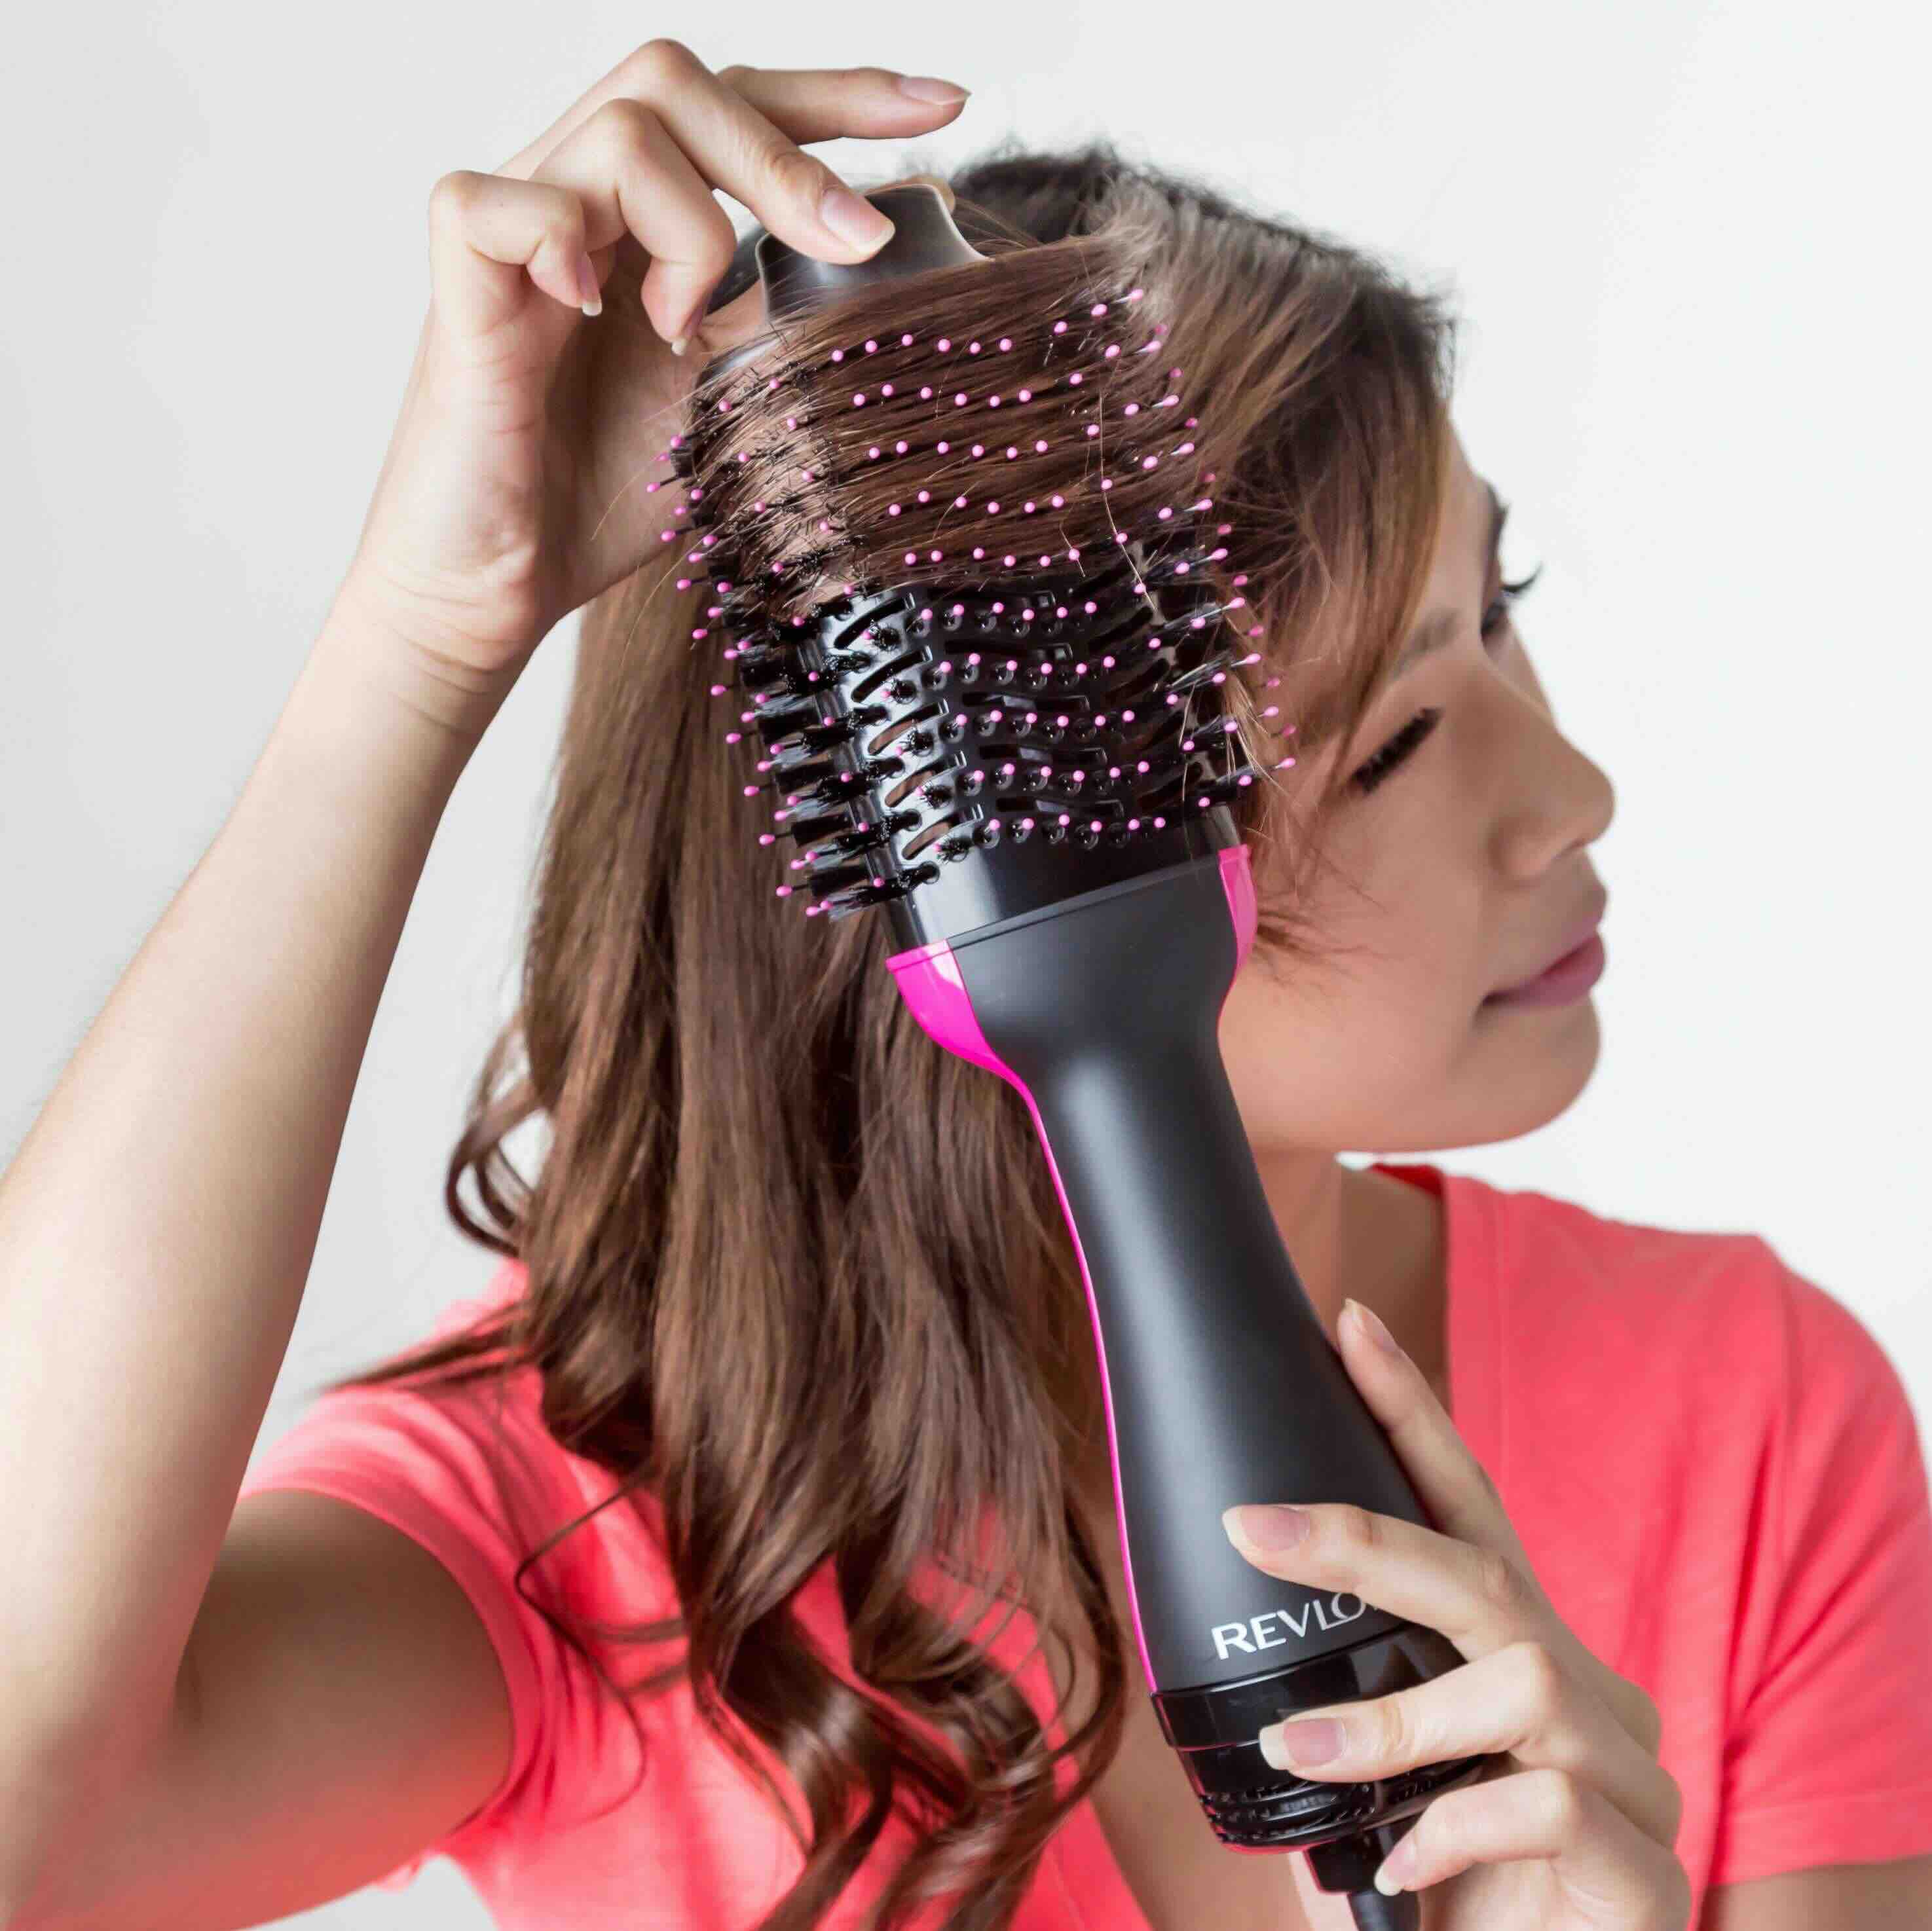 How To Use Revlon Hair Dryer Brush On Short Hair